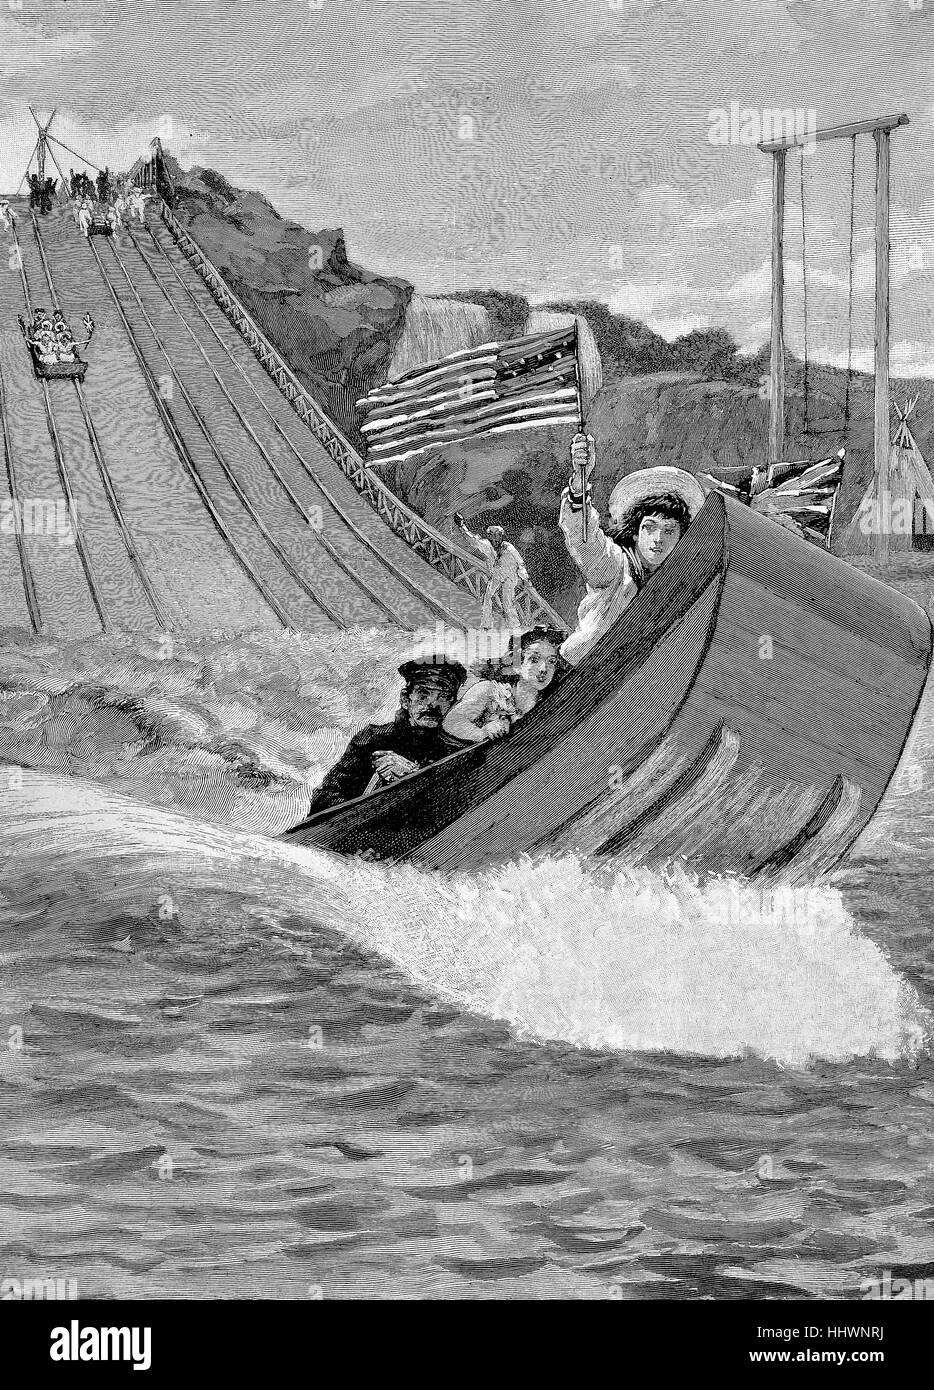 Kapitän Boyton Wasserrutschen, Vereinigte Staaten von Amerika, die Durchlaufmenge ist ein Fahrgeschäft, bestehend aus einem flachen Boot, eine Rampe hinunter oder in einem Gerinne in einer Lagune, Geschichtsbild oder Illustration, die Folien-Shooting veröffentlicht 1890, digital verbessert Stockfoto